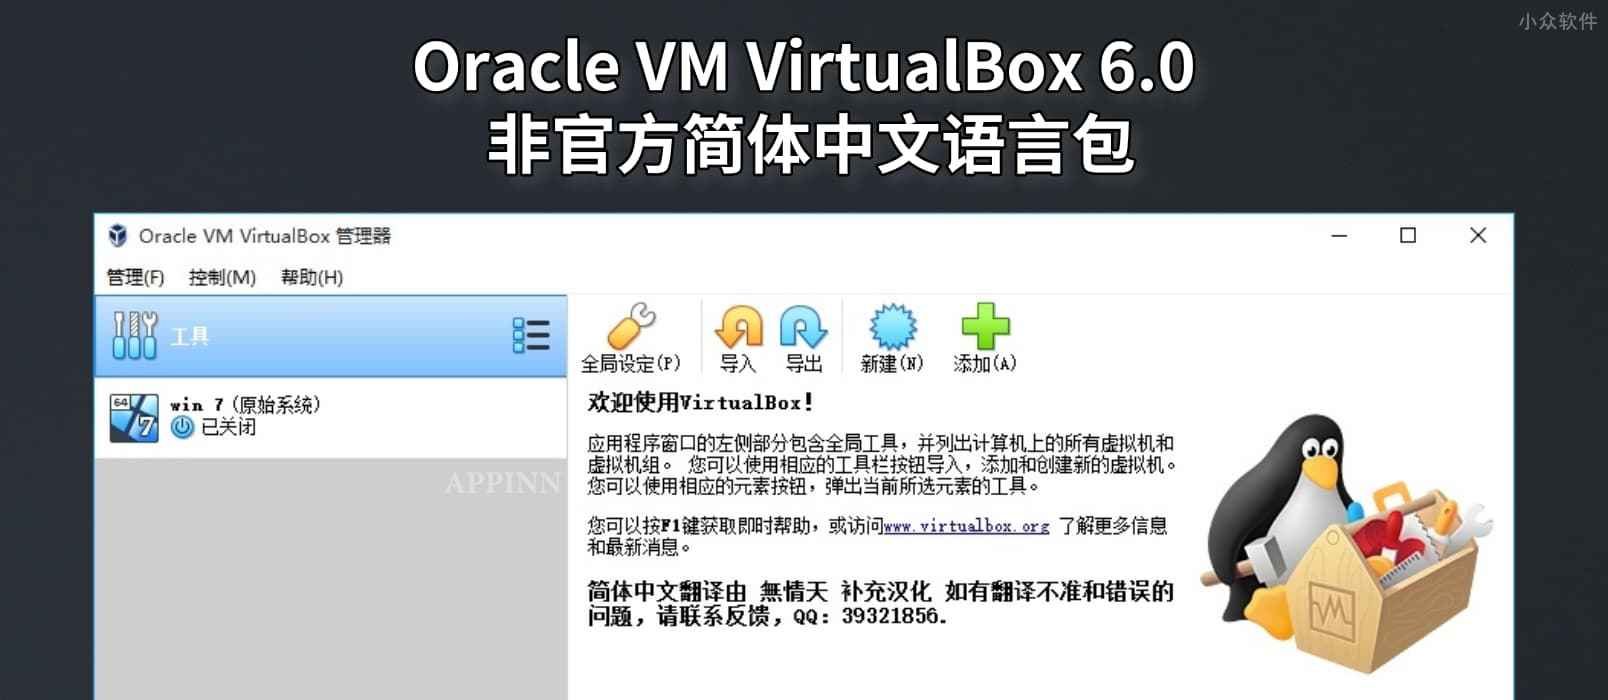 Oracle VM VirtualBox 6.0 非官方简体中文语言包 1